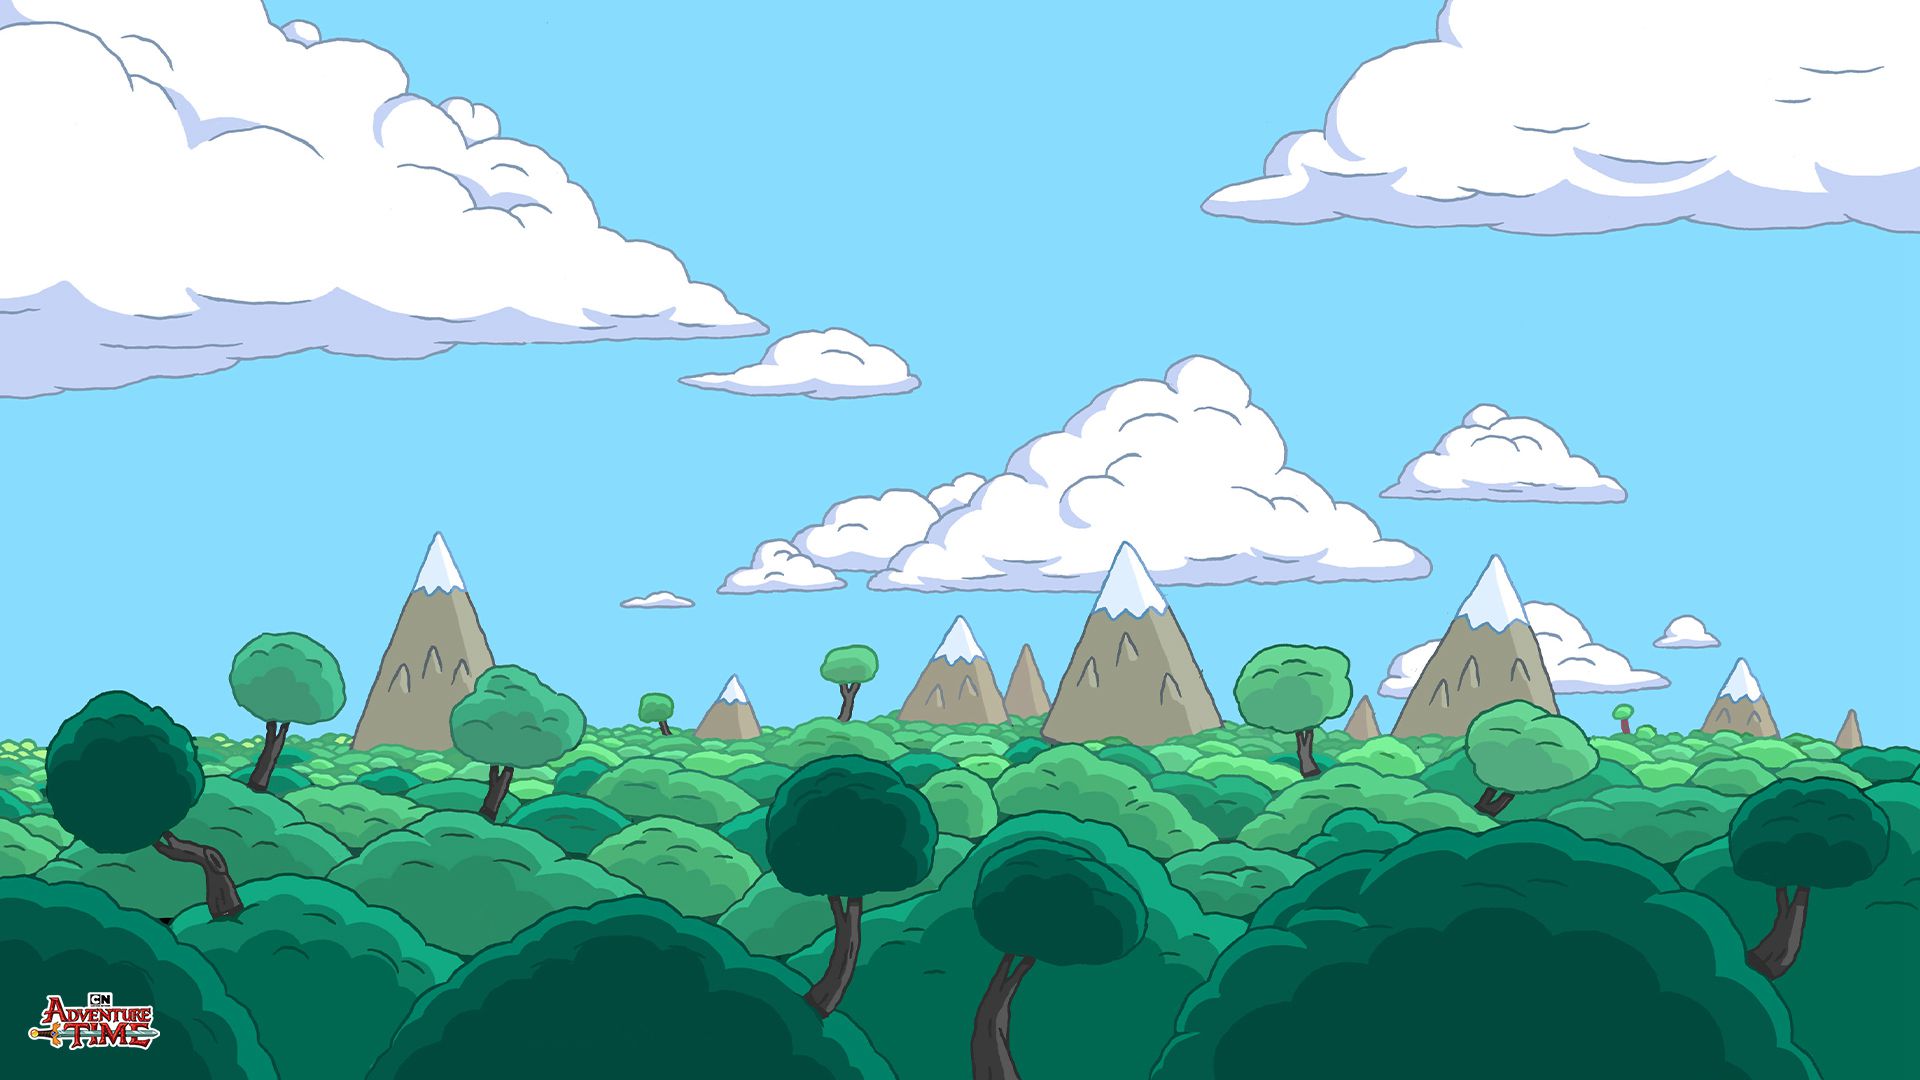 入目清新的绿色森系背景，美国搞笑动画《探险活宝》森系场景插画美图